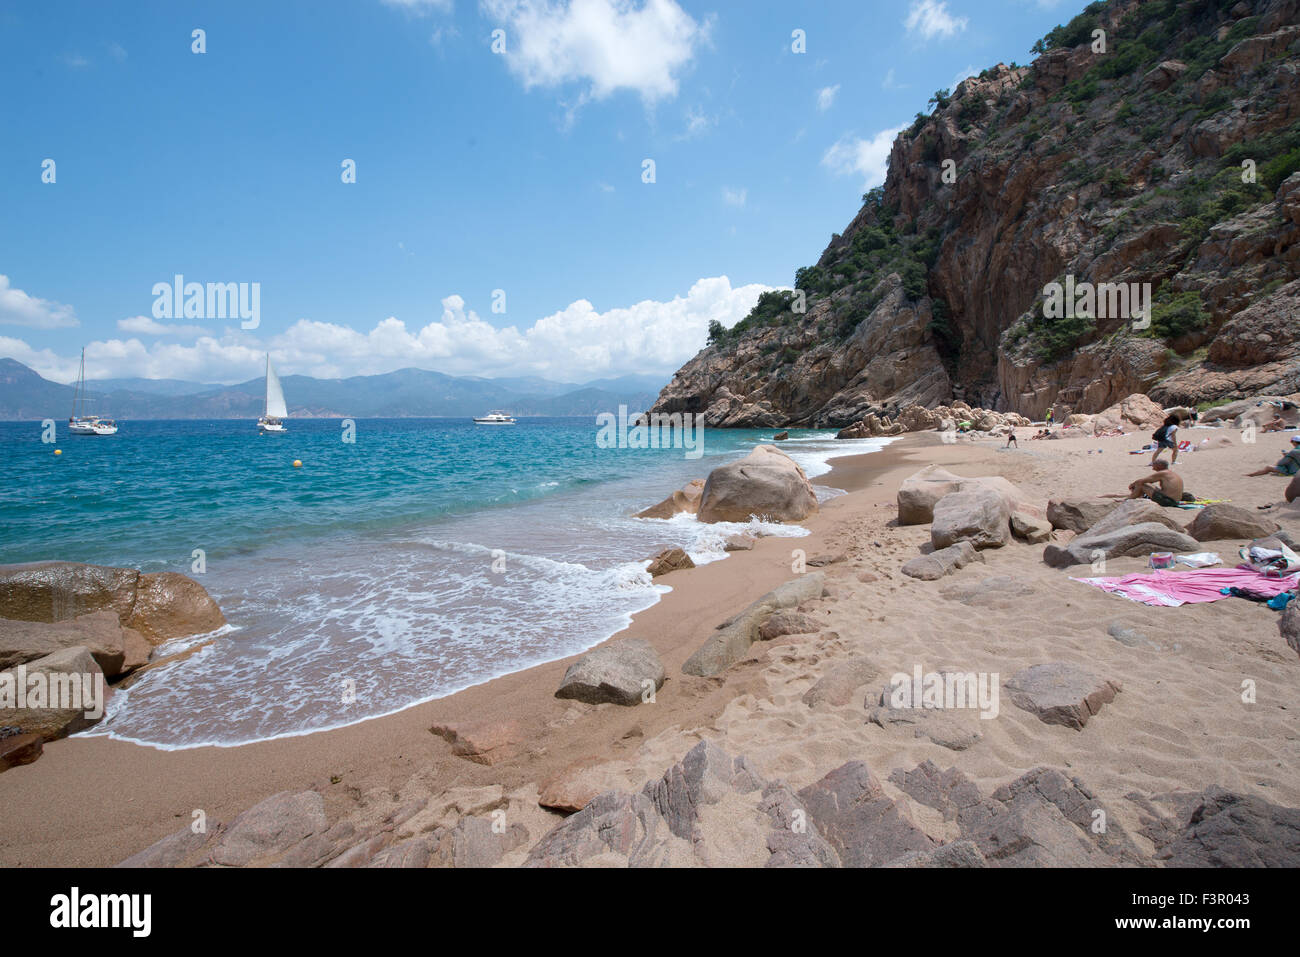 Appartata piccola e bella spiaggia a marino de ficajola, piana, Corsica, Francia Foto Stock